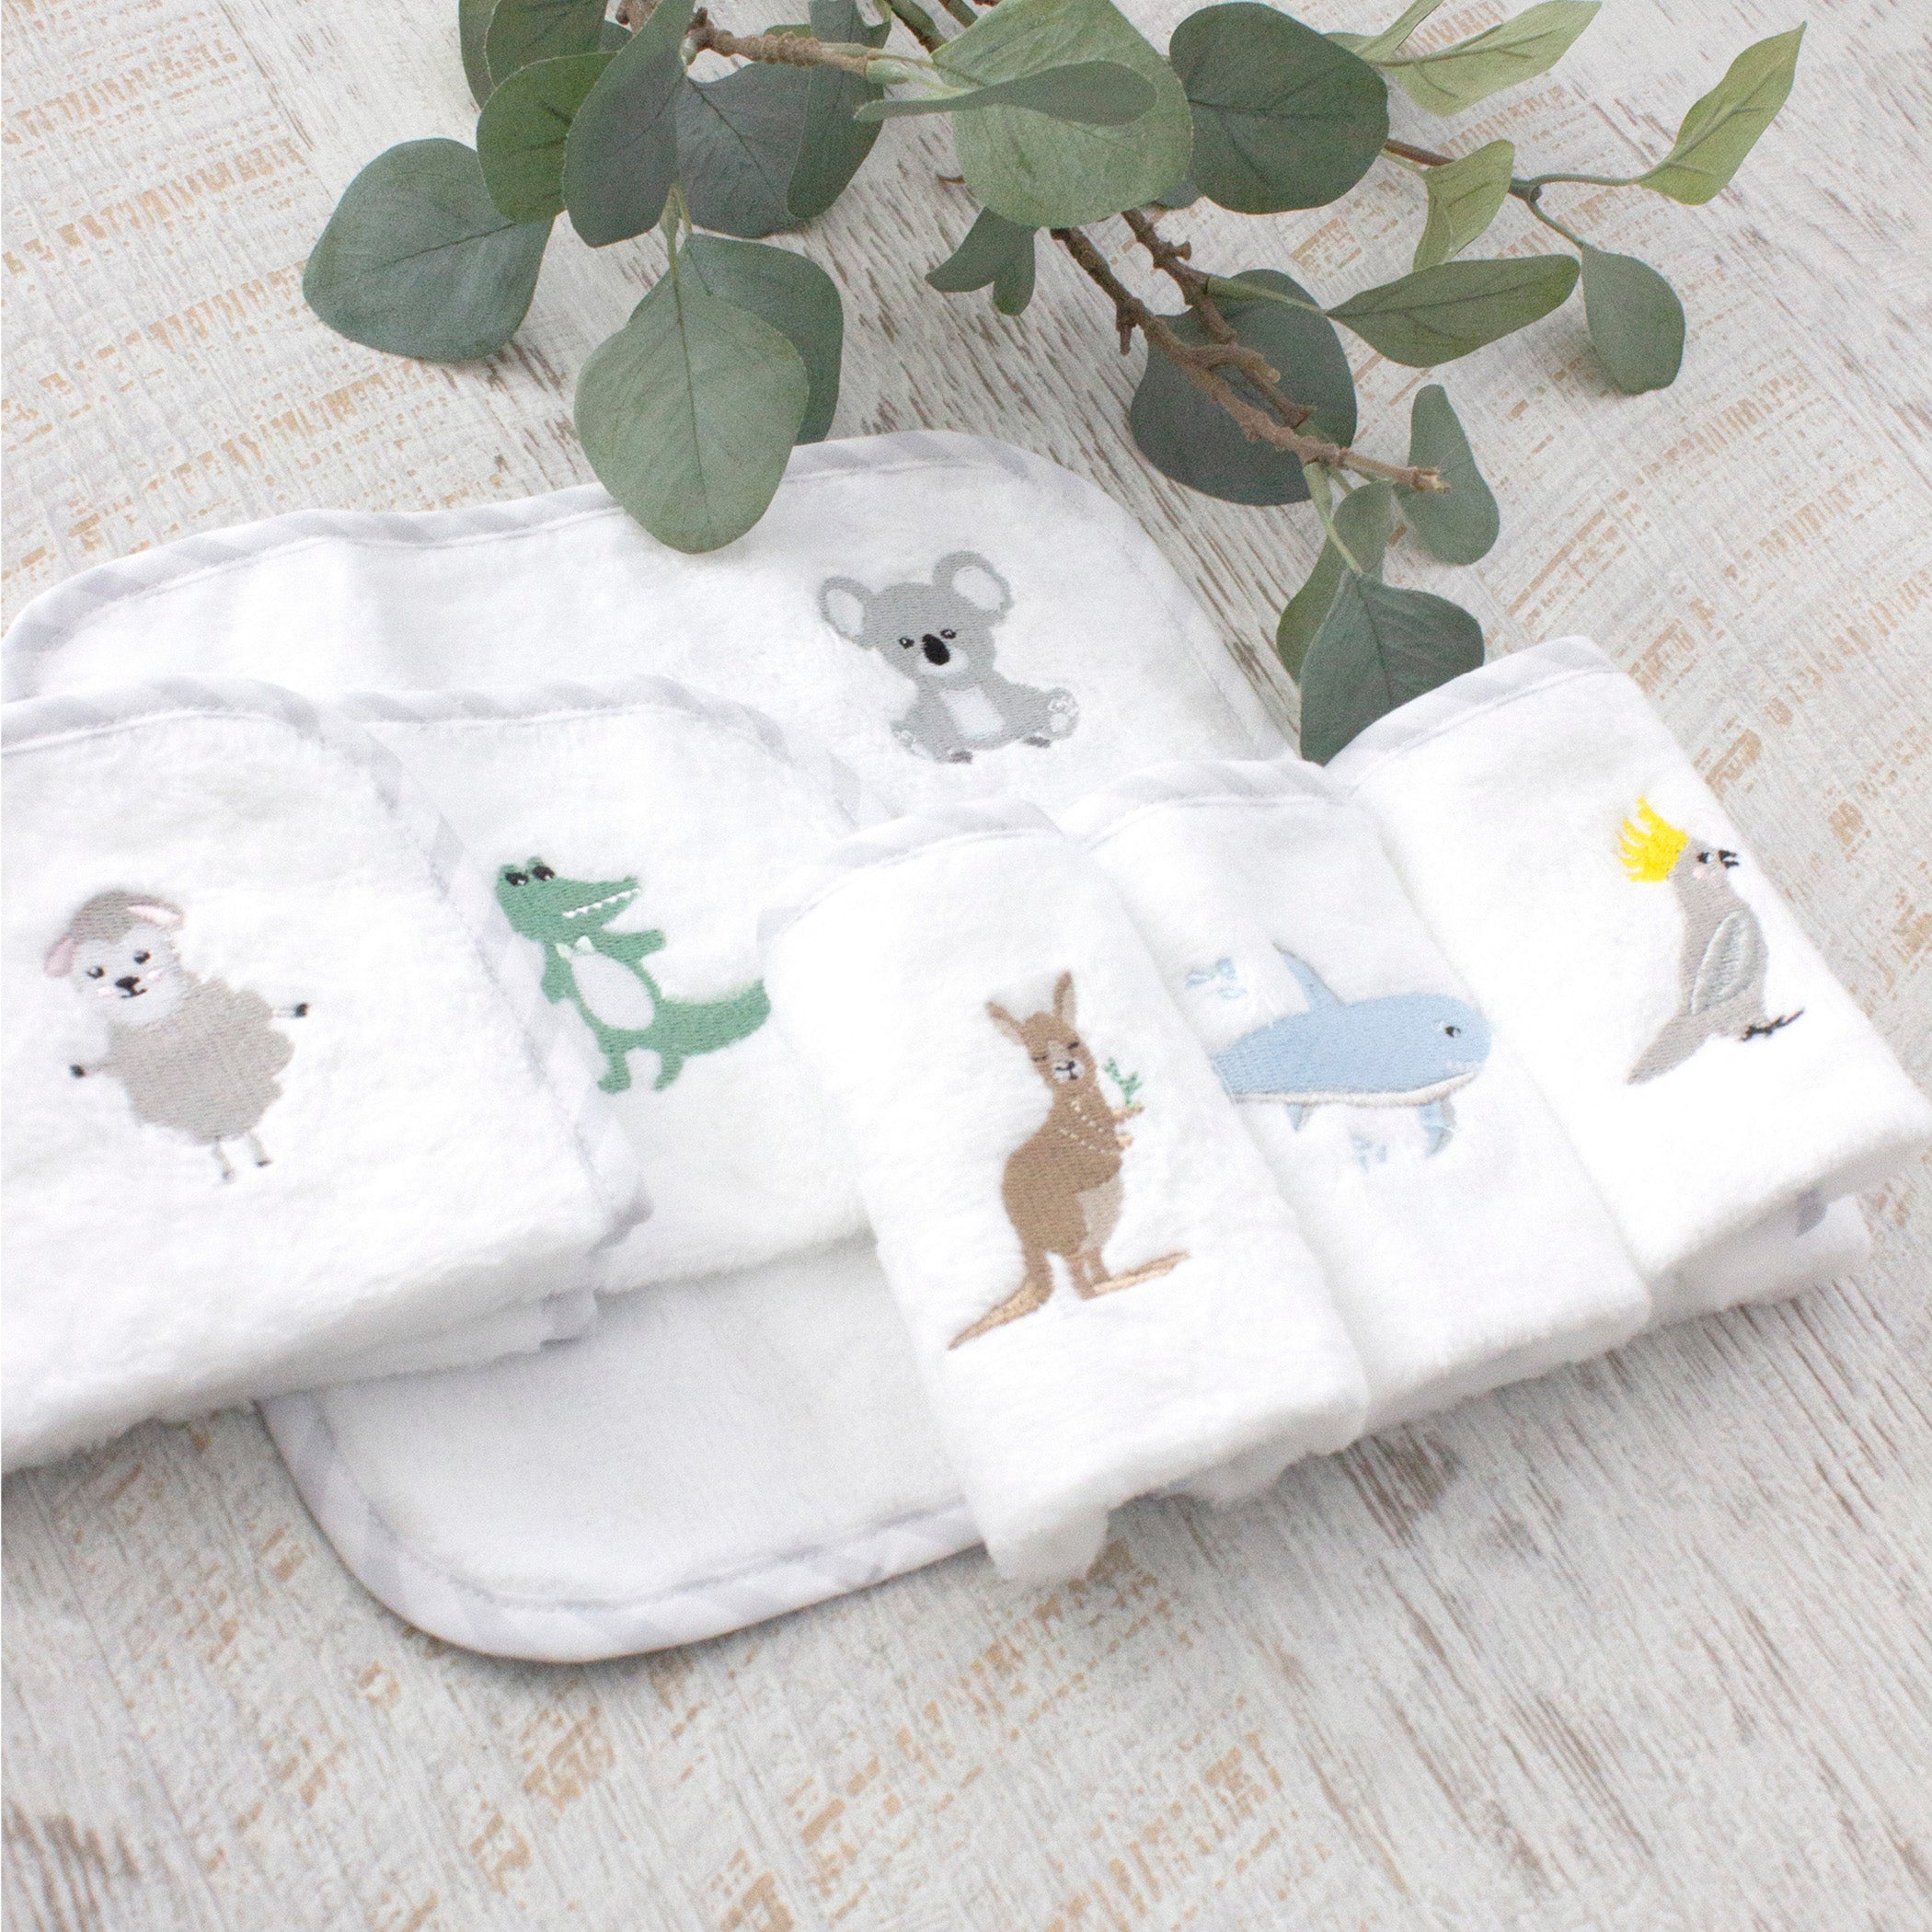 Kangaroo Nursery Bundle - Hooded Towel, Face Washers, Security Blanket, Muslin Wraps